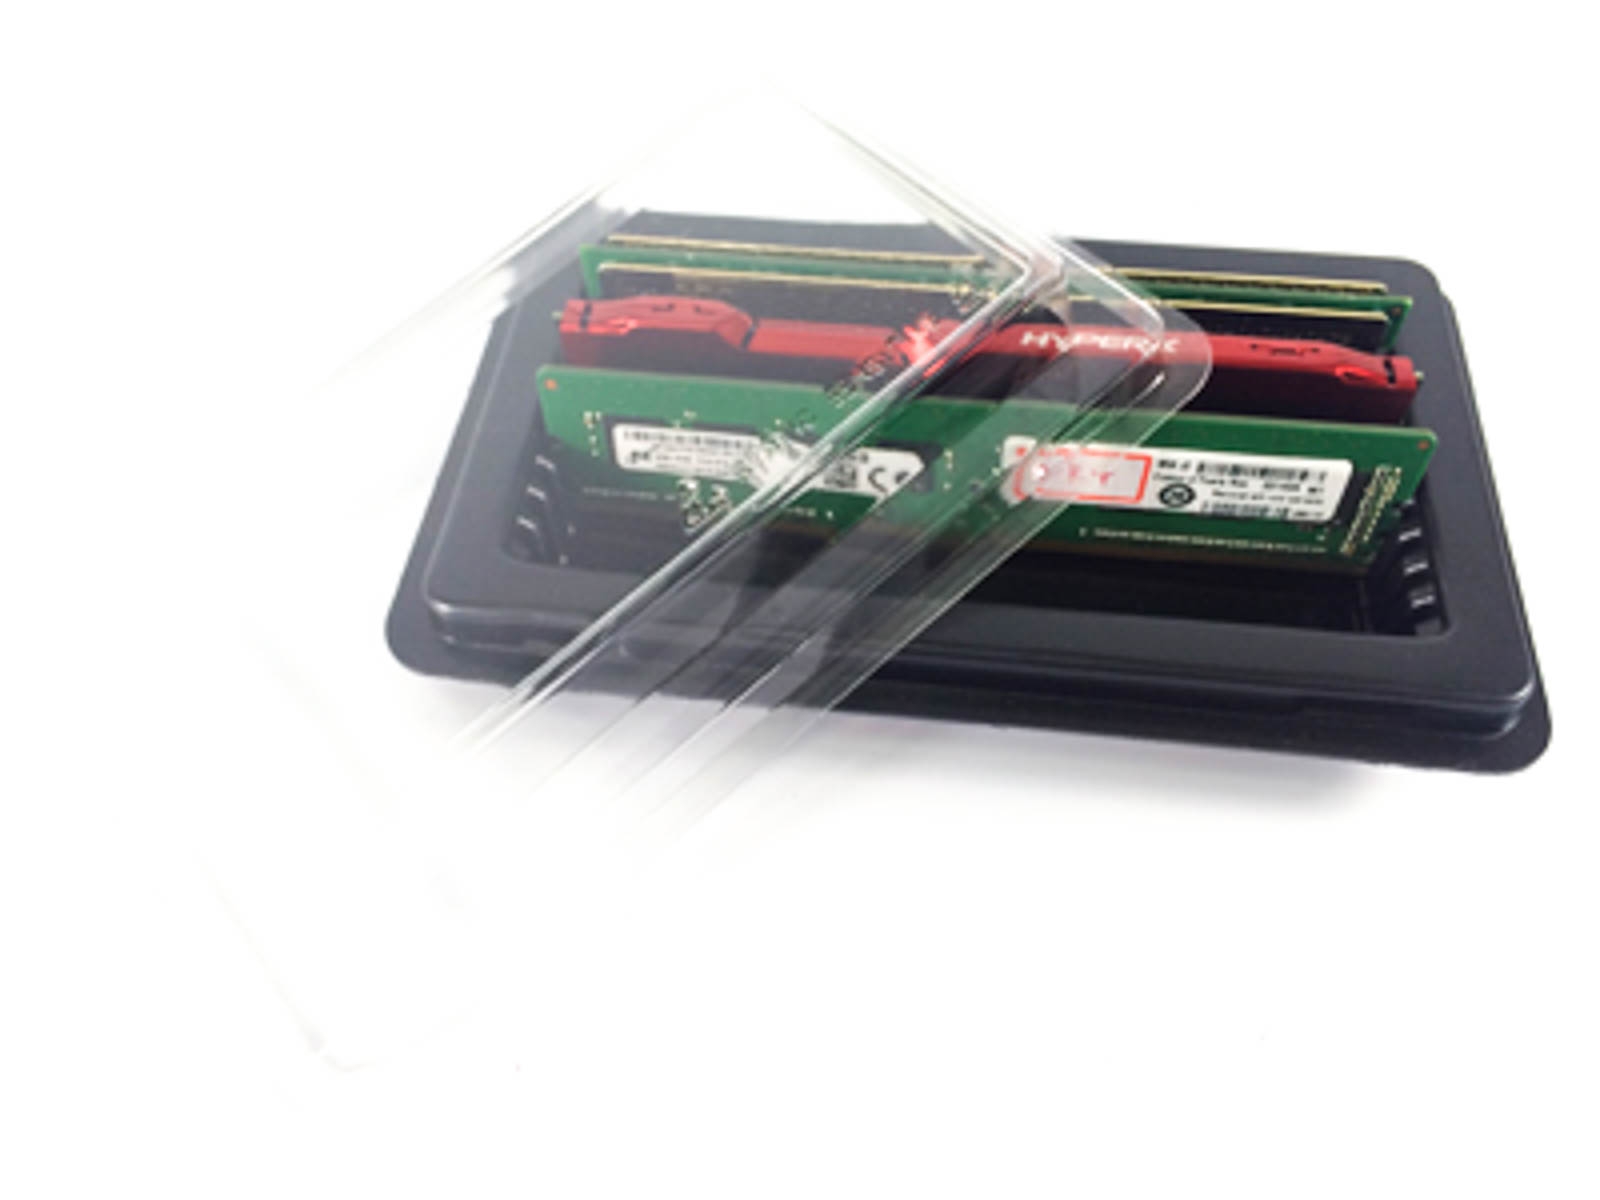 DDR4/DDR3 10x DIMM / 20x DDR4 SO-DIMM Tray & Lid RAM Packaging